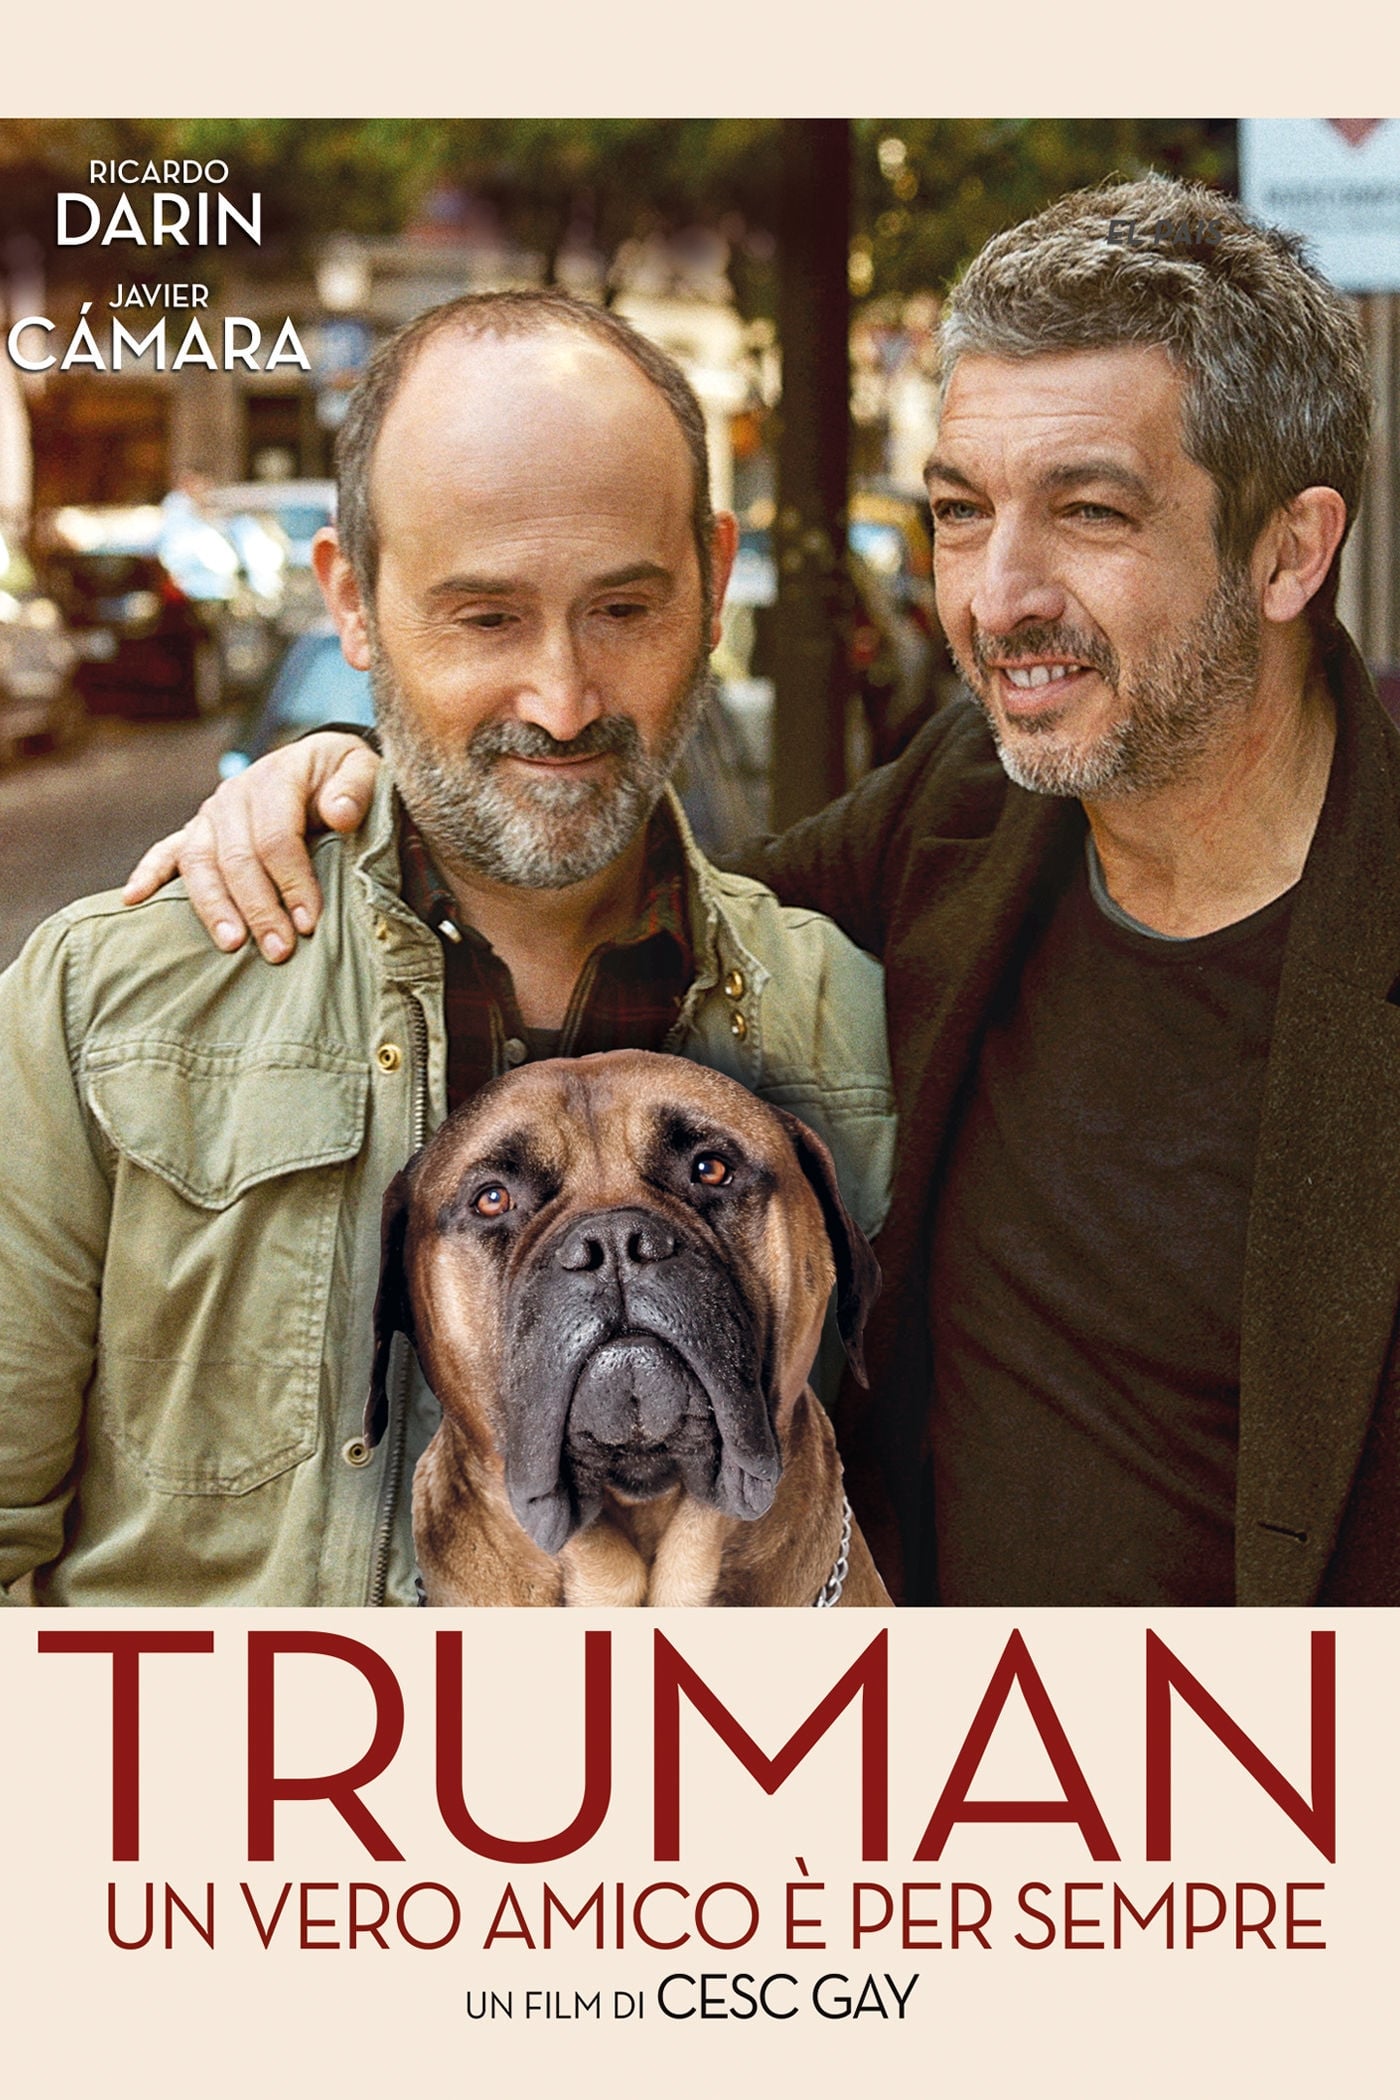 Truman – Un vero amico è per sempre [HD] (2016)